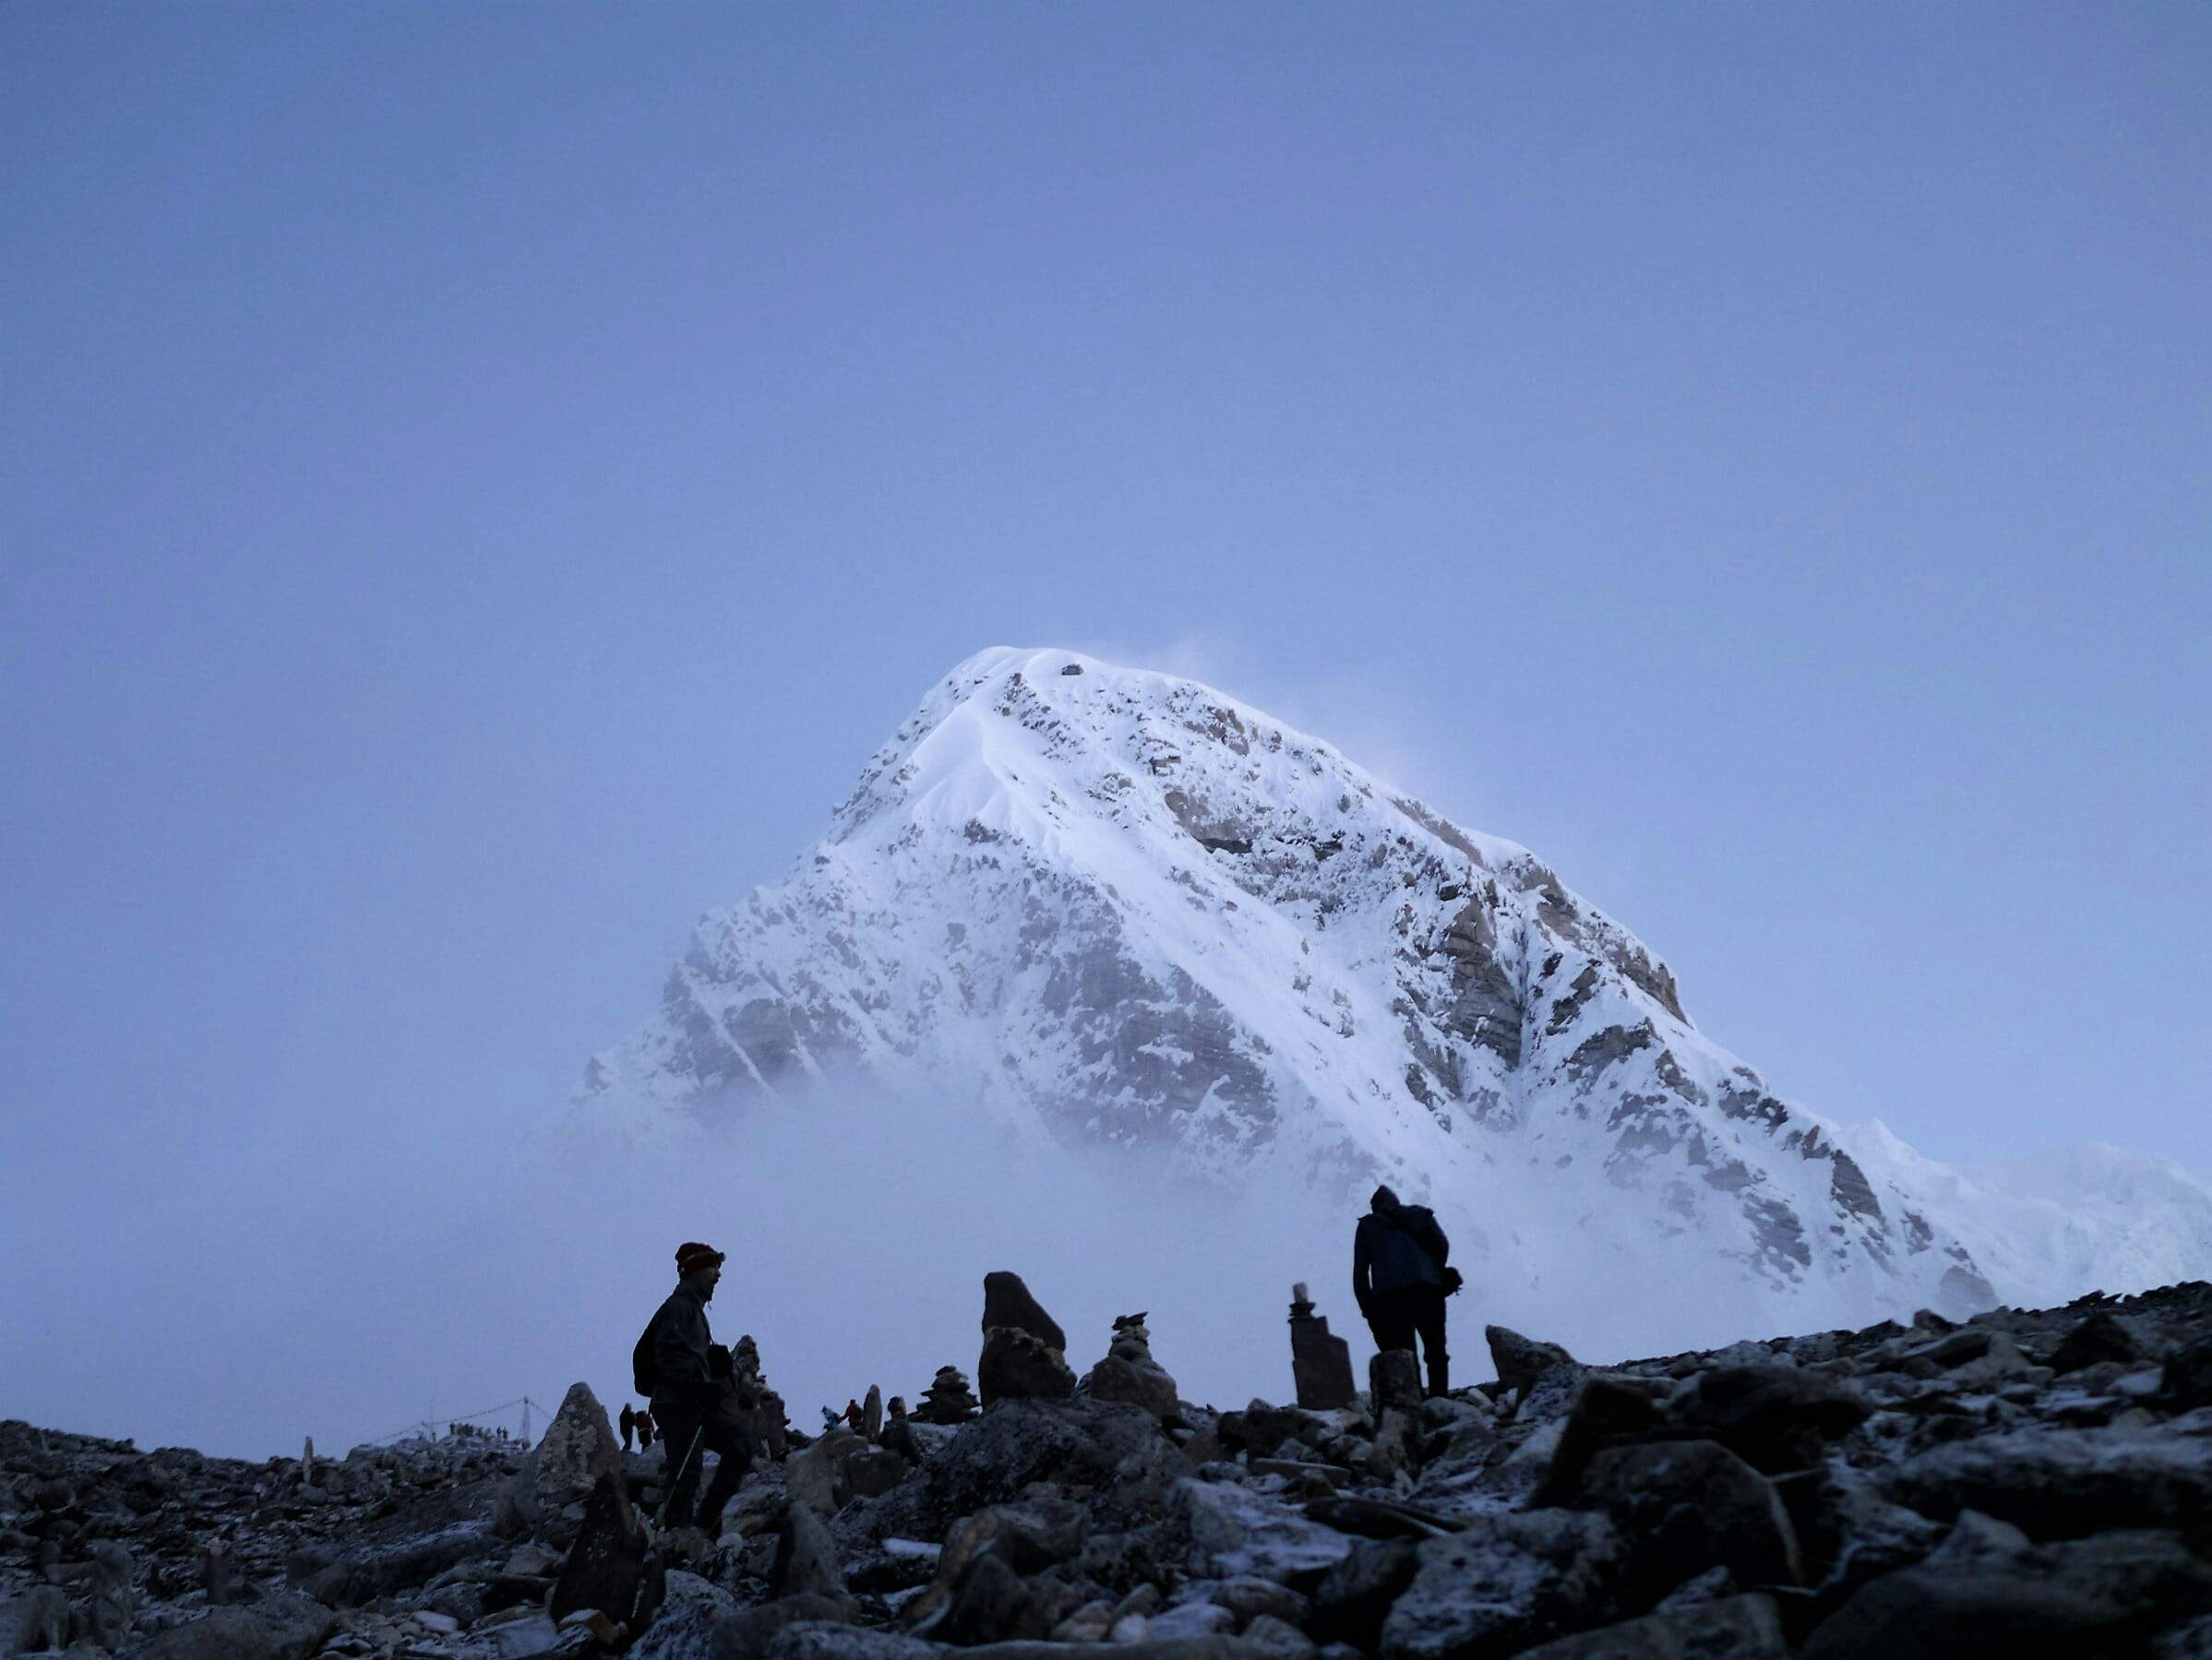 Requisito sorprendente para todos aquellos que quieran escalar el Everest: llevarse los propios excrementos